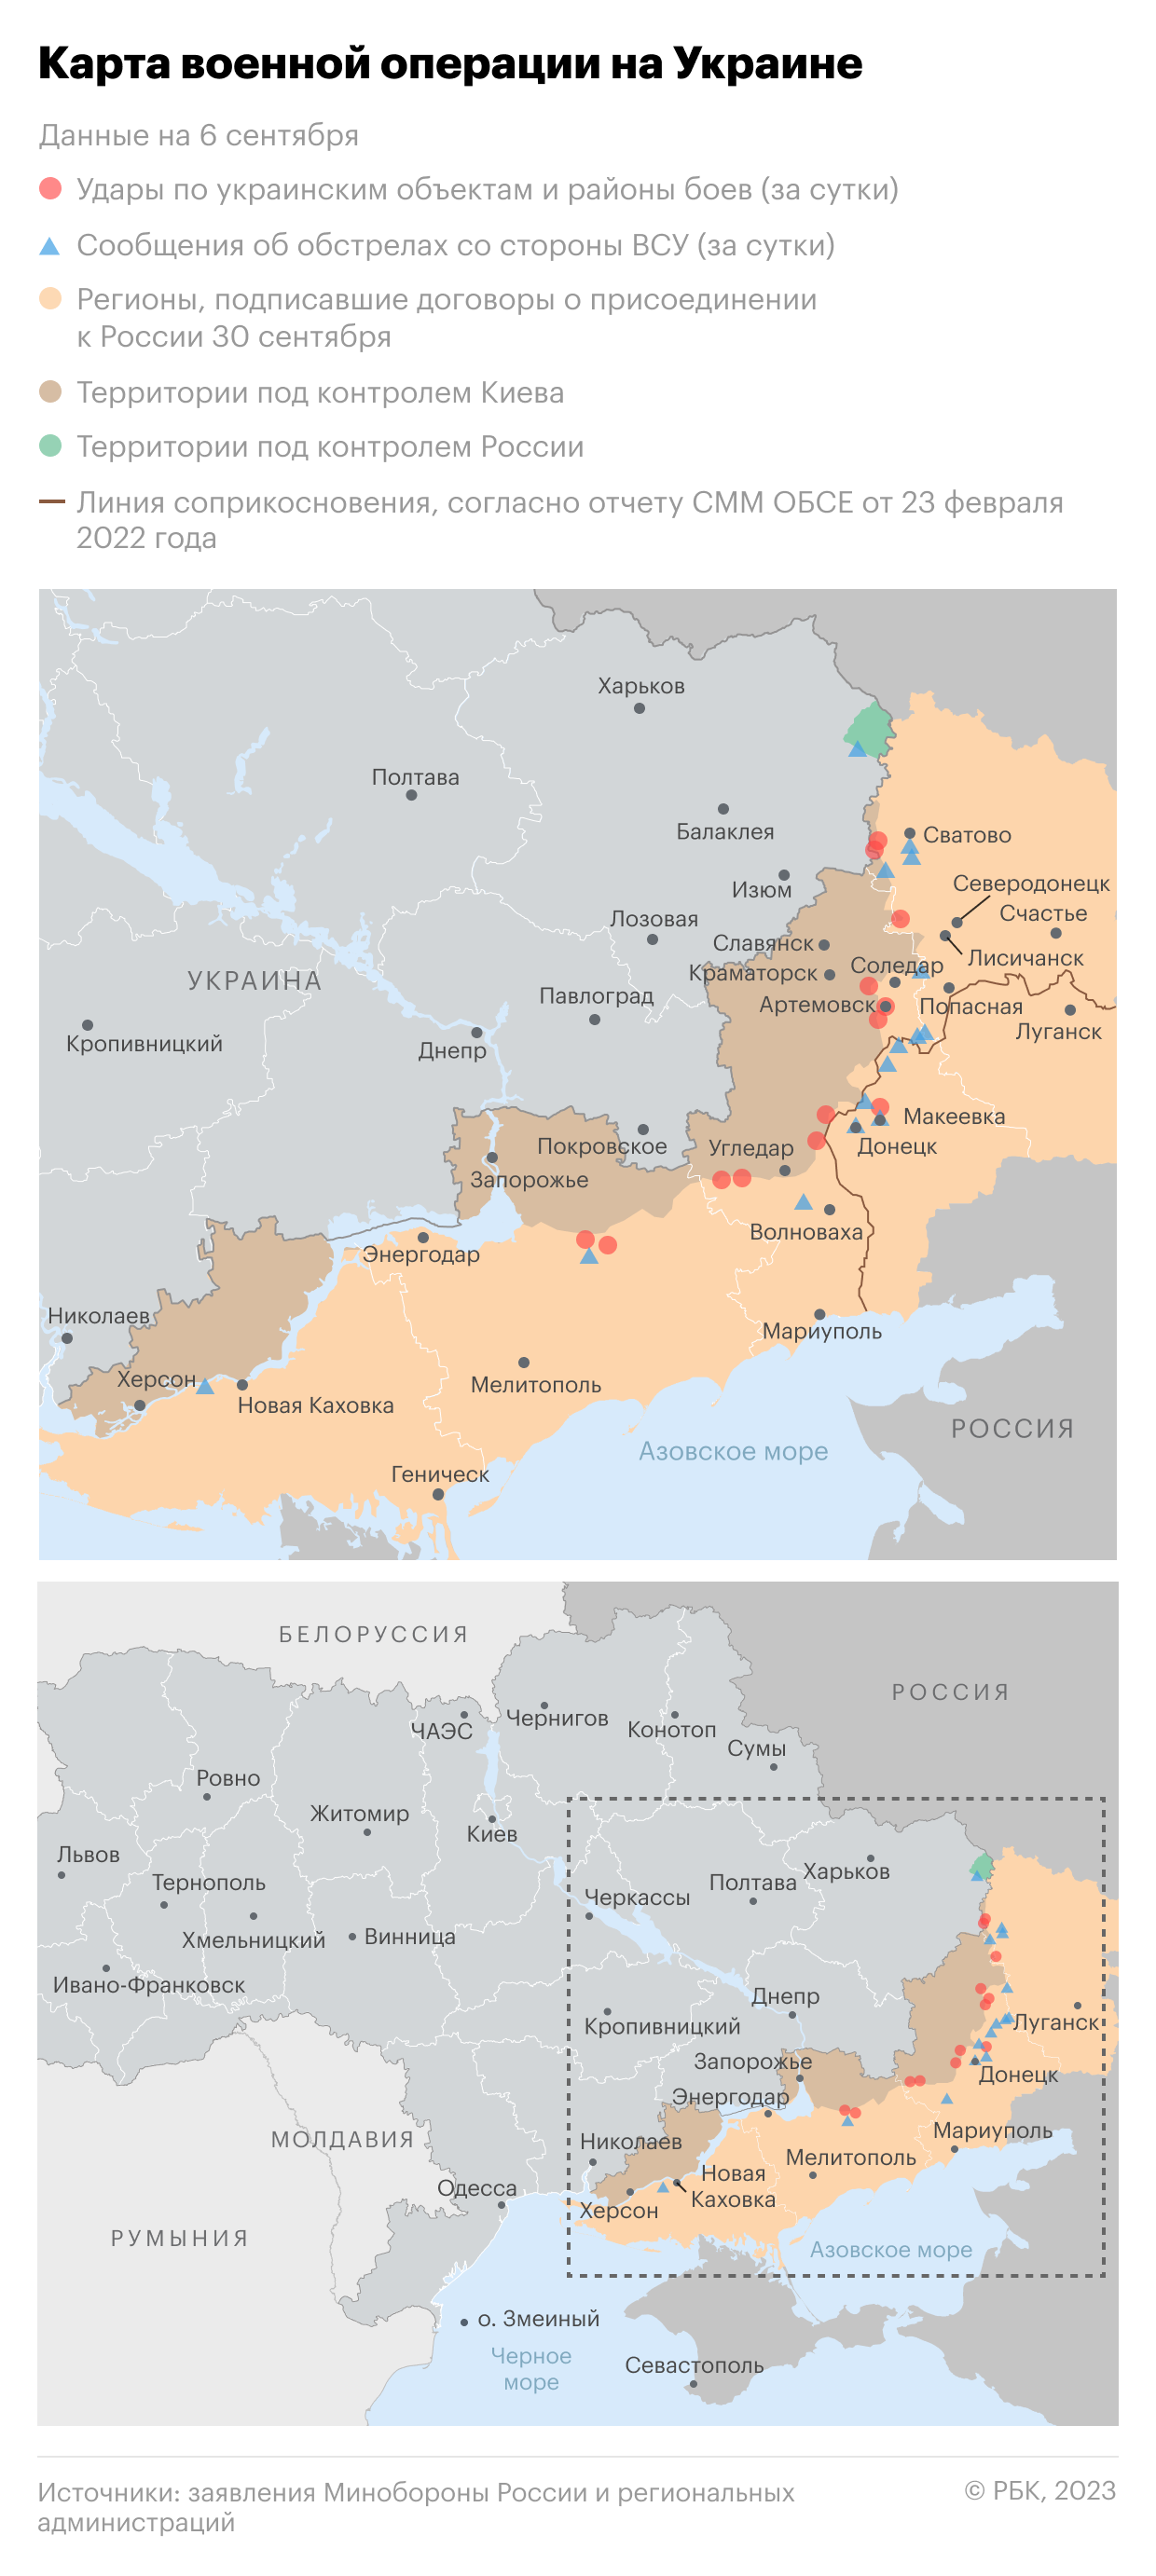 Военная операция на Украине. Карта на 6 сентября0